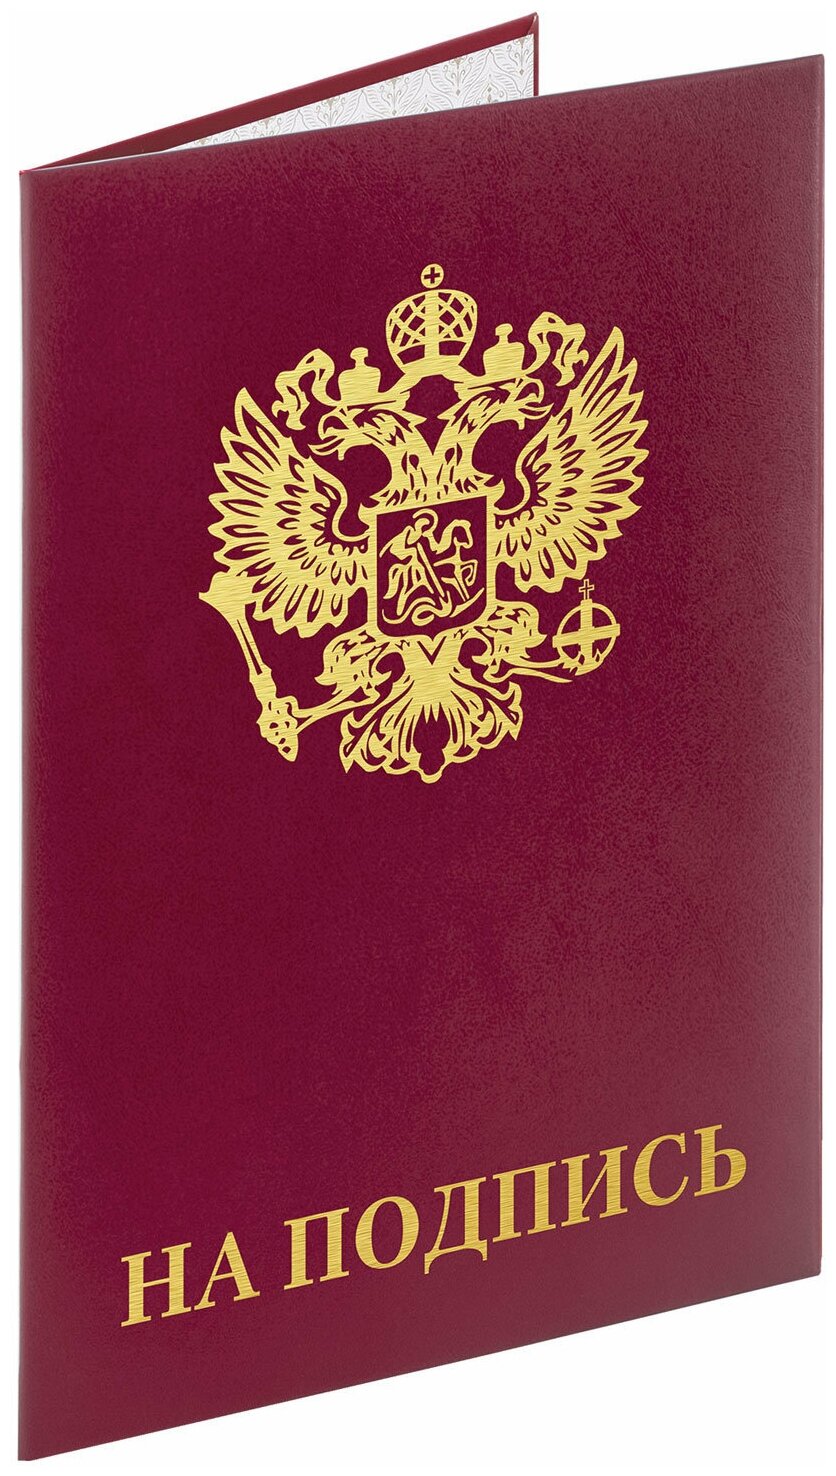 Папка адресная Staff бумвинил "На подпись" с гербом России, А4, бордовая, индивидуальная упаковка (129626)